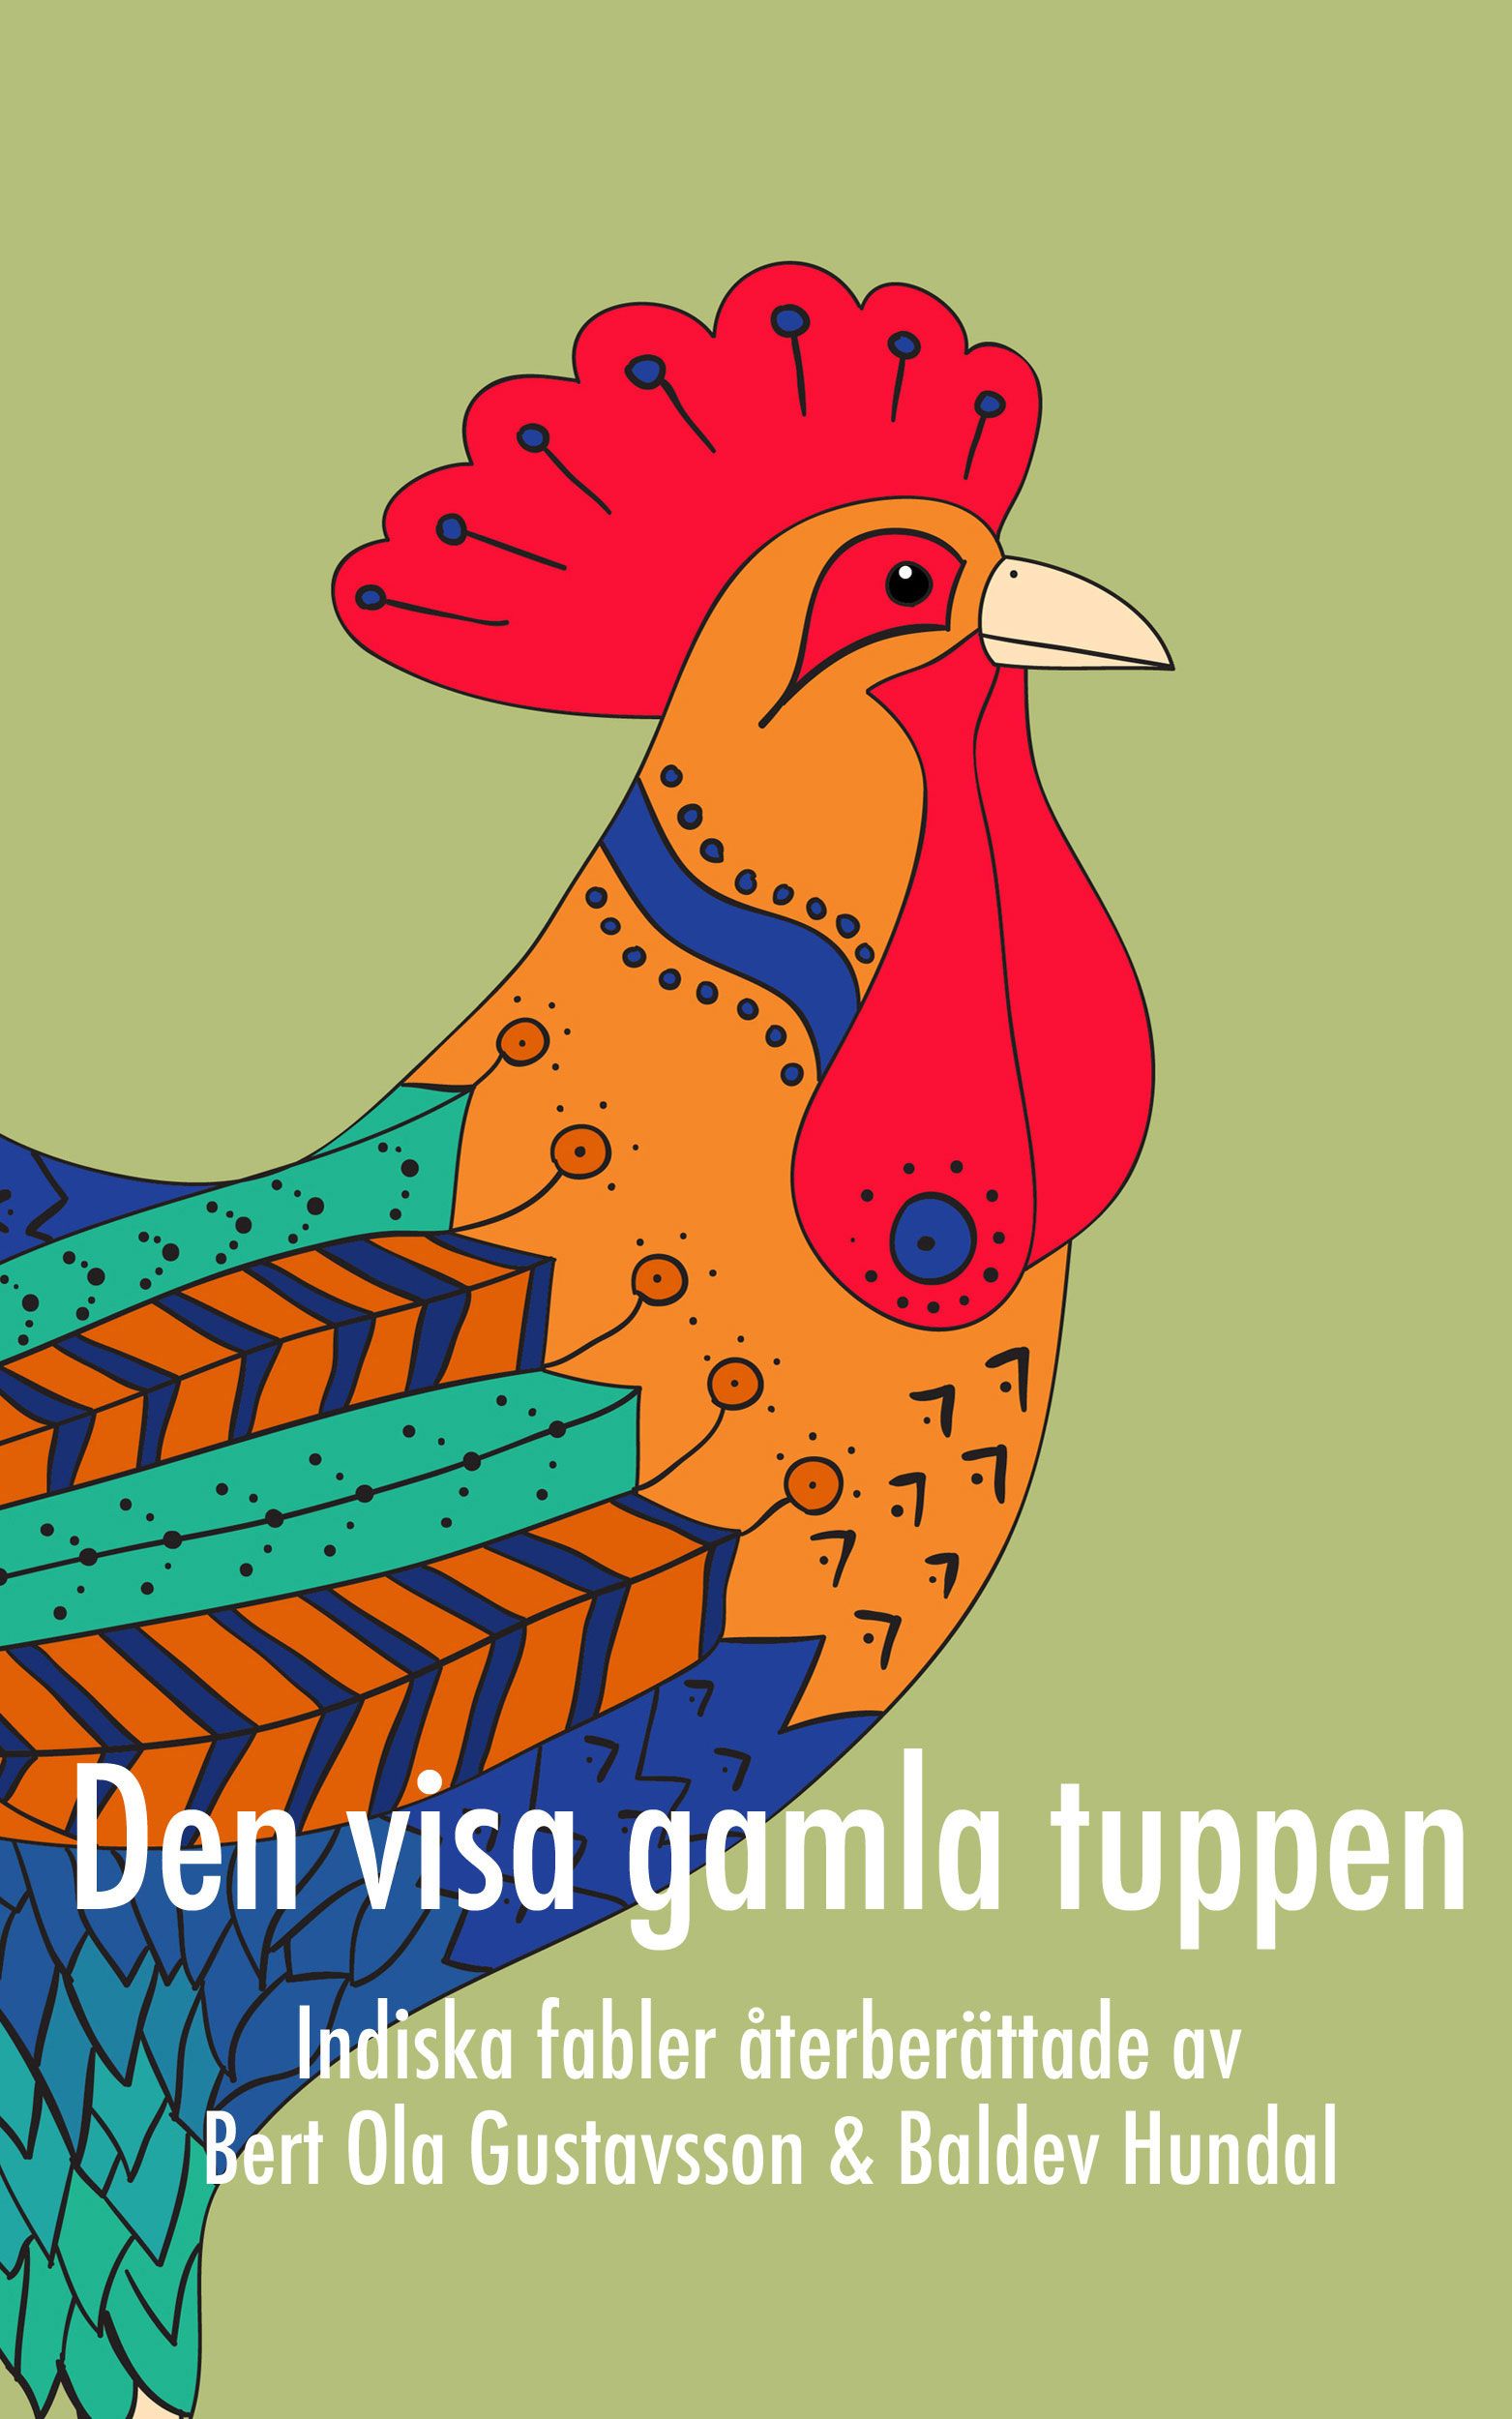 Den visa gamla tuppen, e-bog af Bert Ola Gustavsson, Baldev Hundal